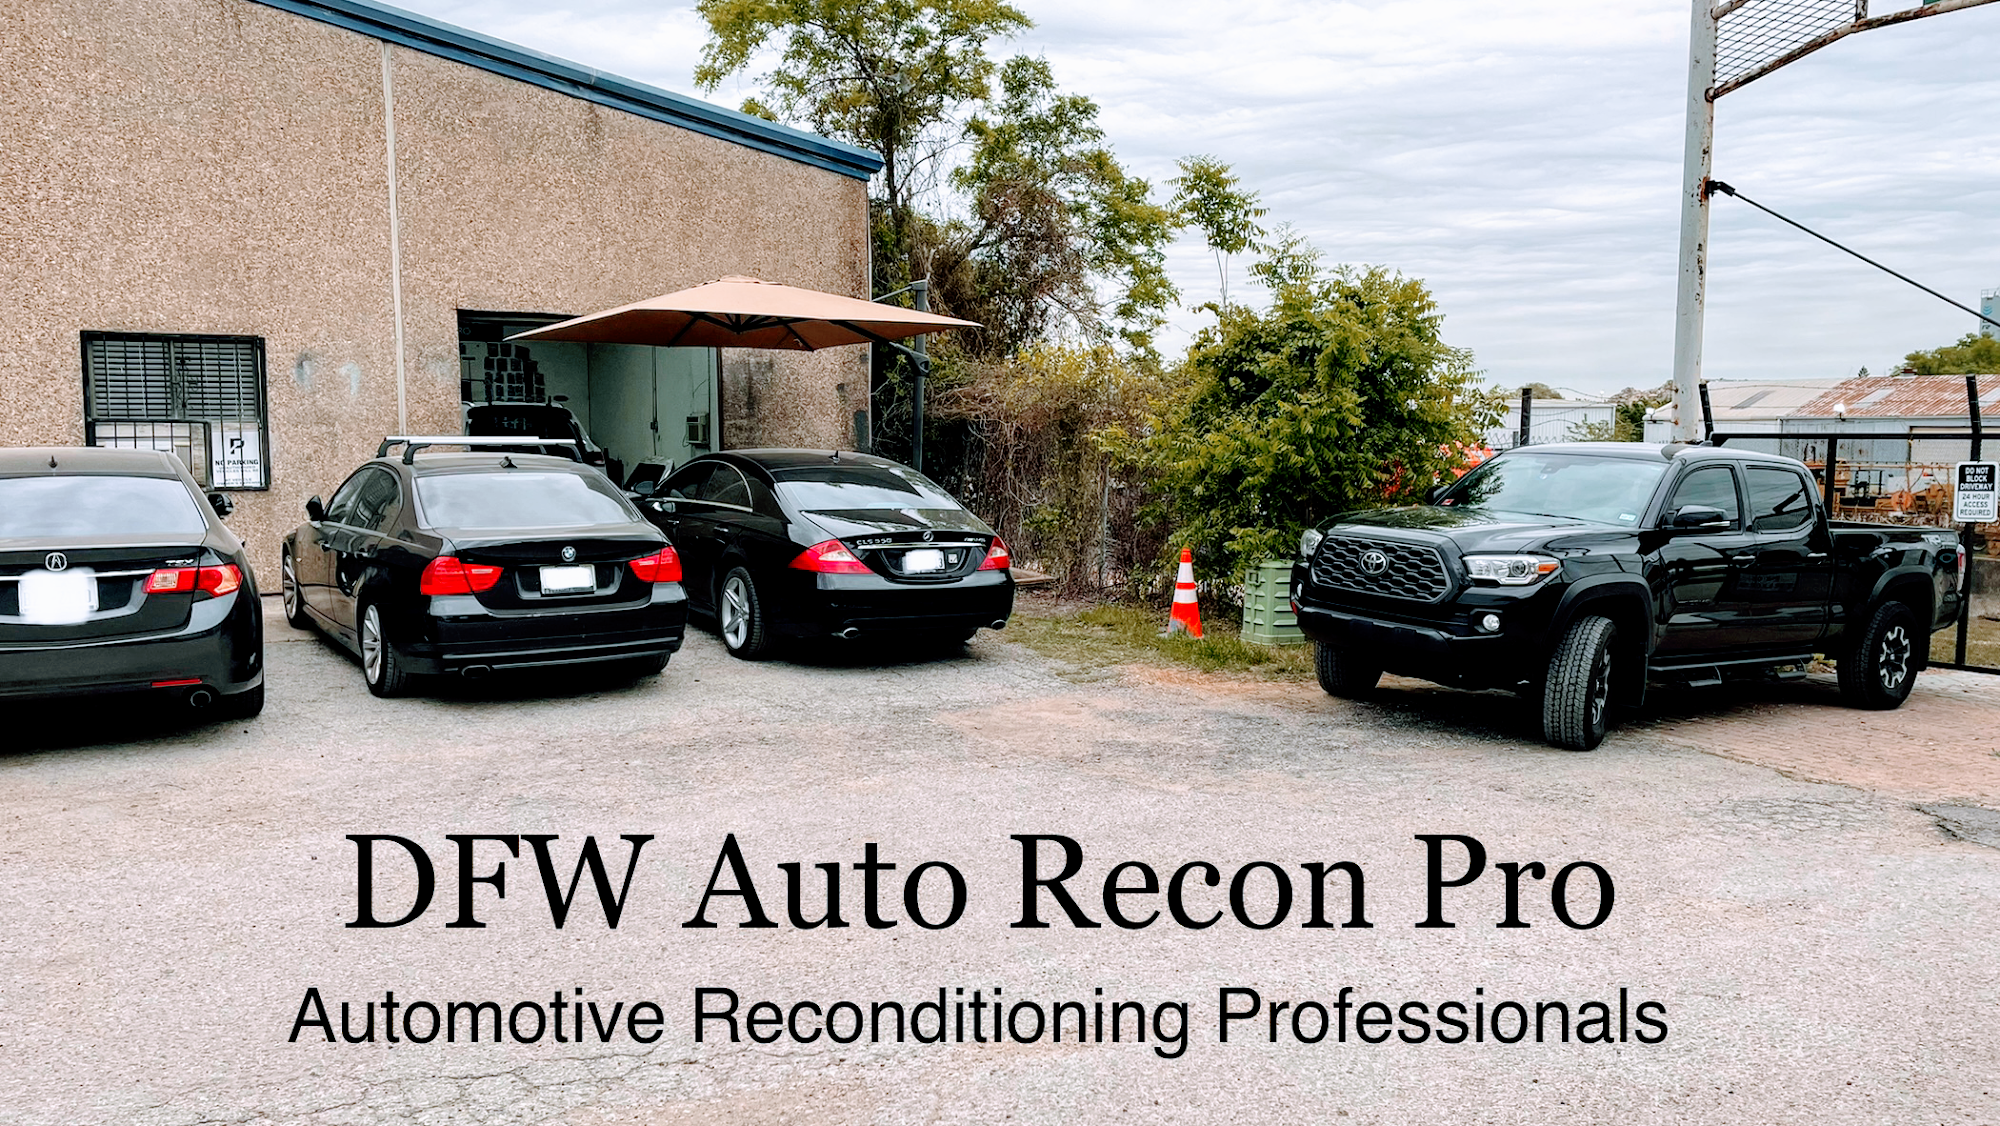 DFW Auto Recon Pro LLC